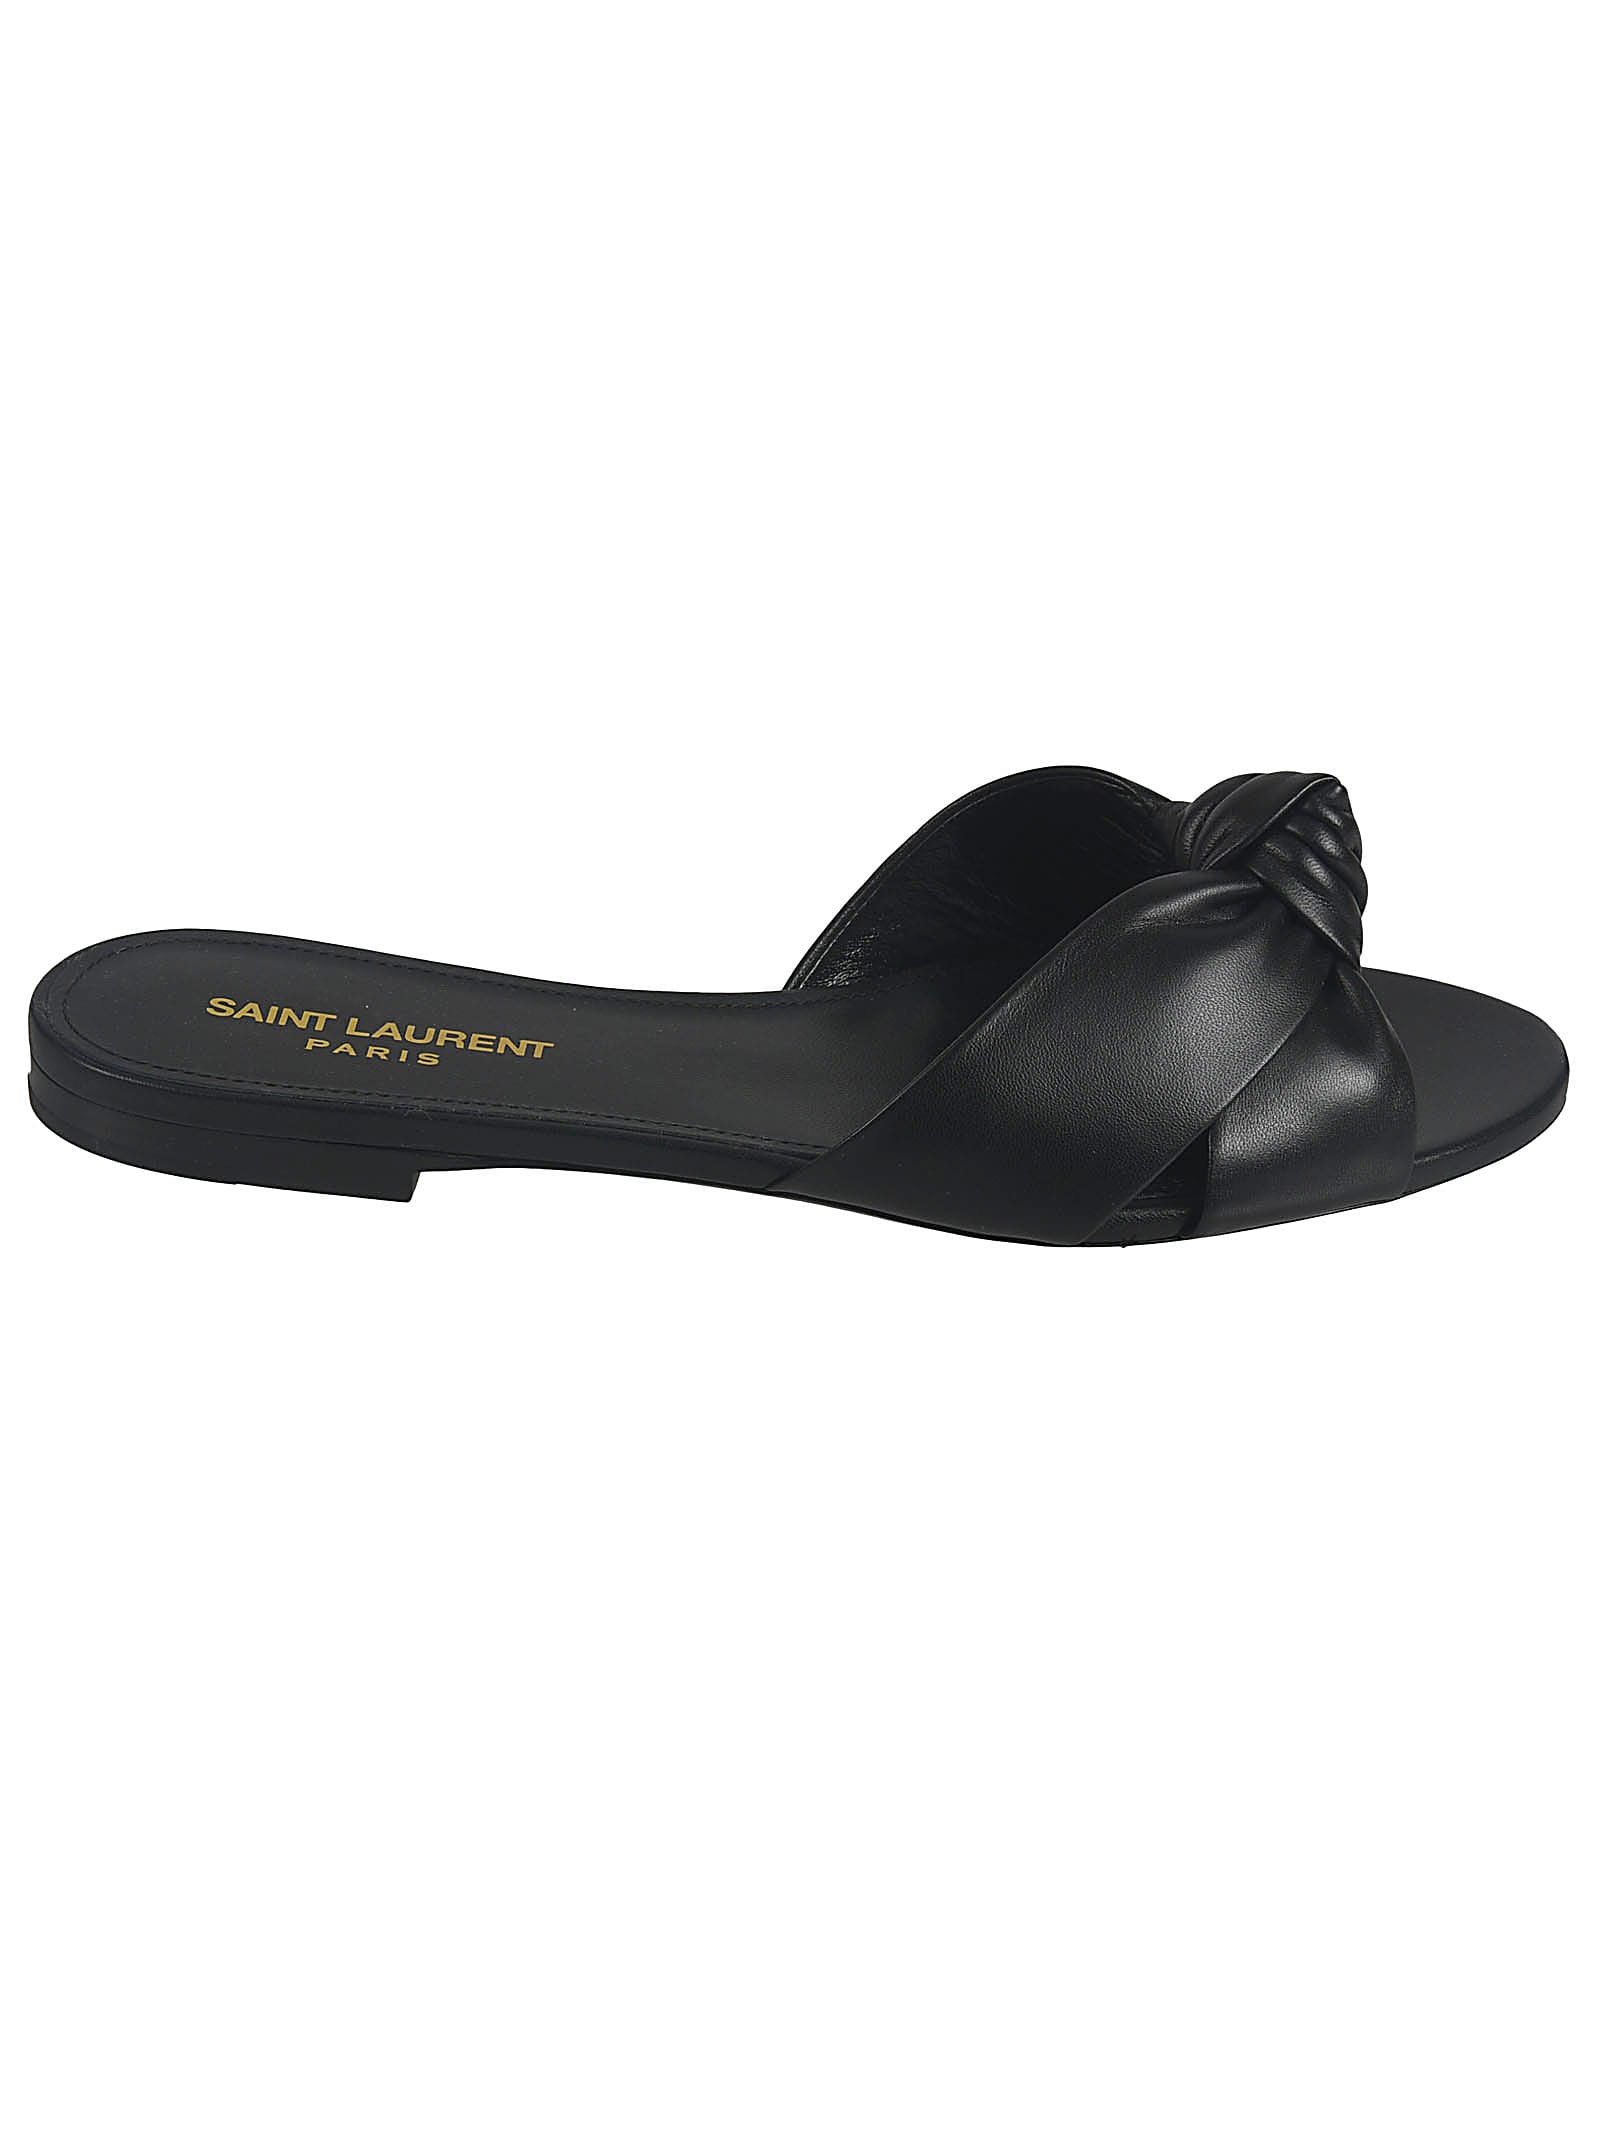 Buy Saint Laurent Bianca 05 Mule Sandals online, shop Saint Laurent shoes with free shipping